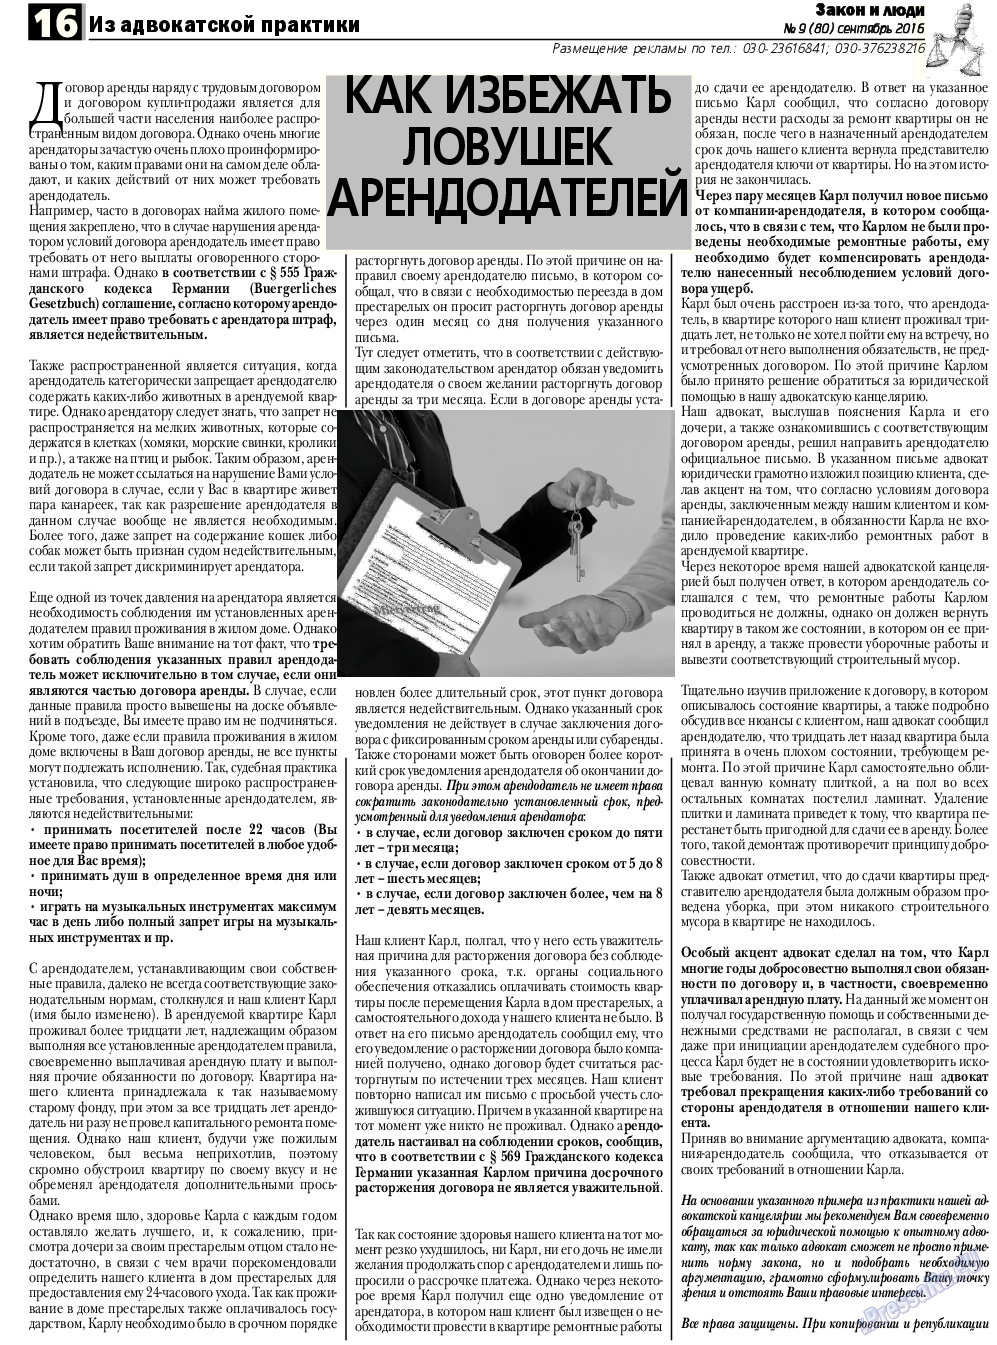 Закон и люди, газета. 2016 №9 стр.16